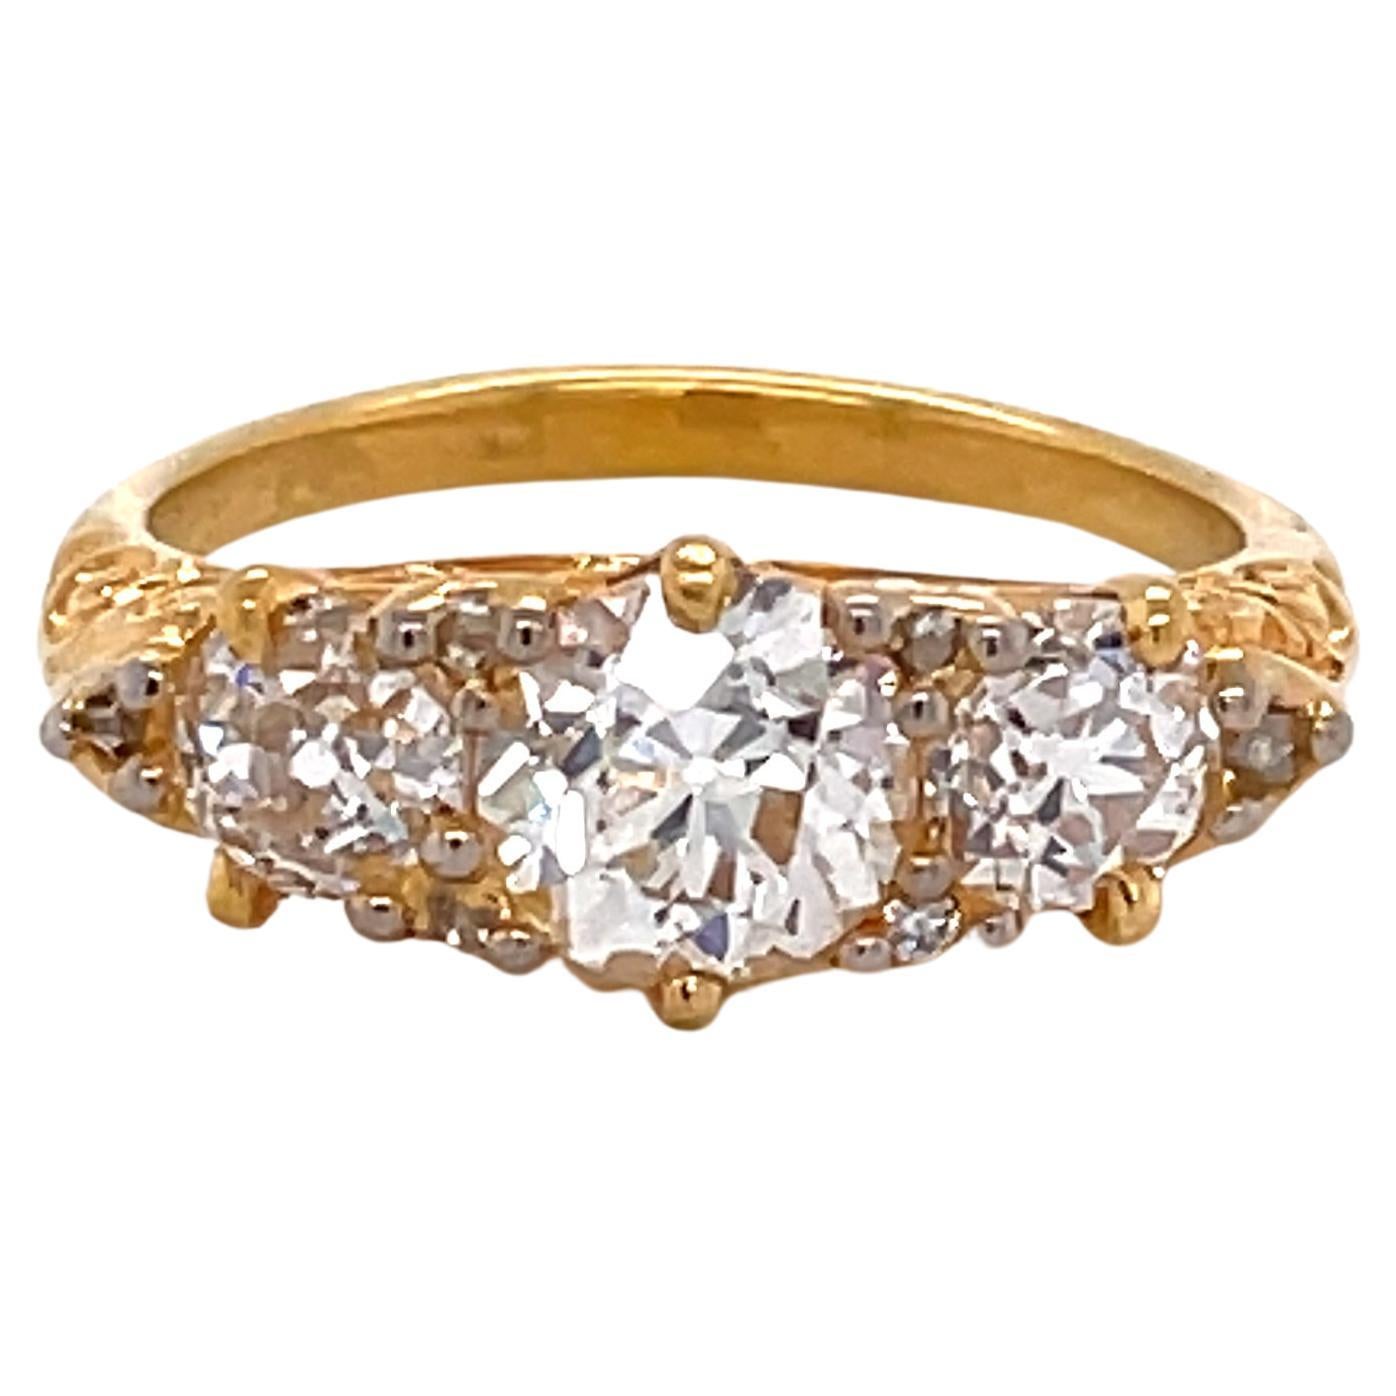 Antique English Diamond 18 Karat Yellow Gold Ring